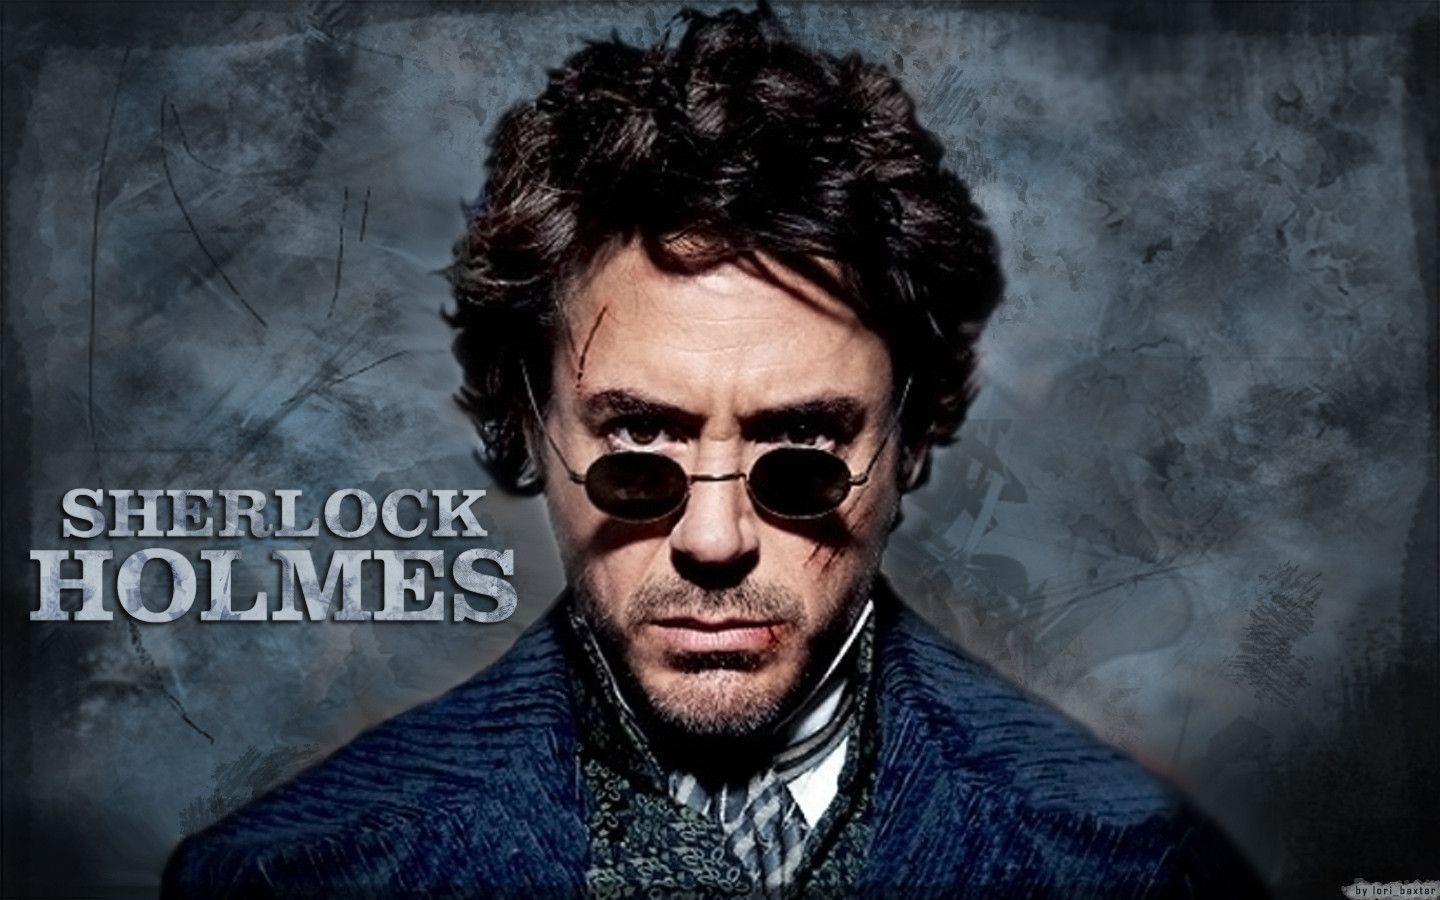 Sherlock Holmes Wallpaper in jpg format for free download